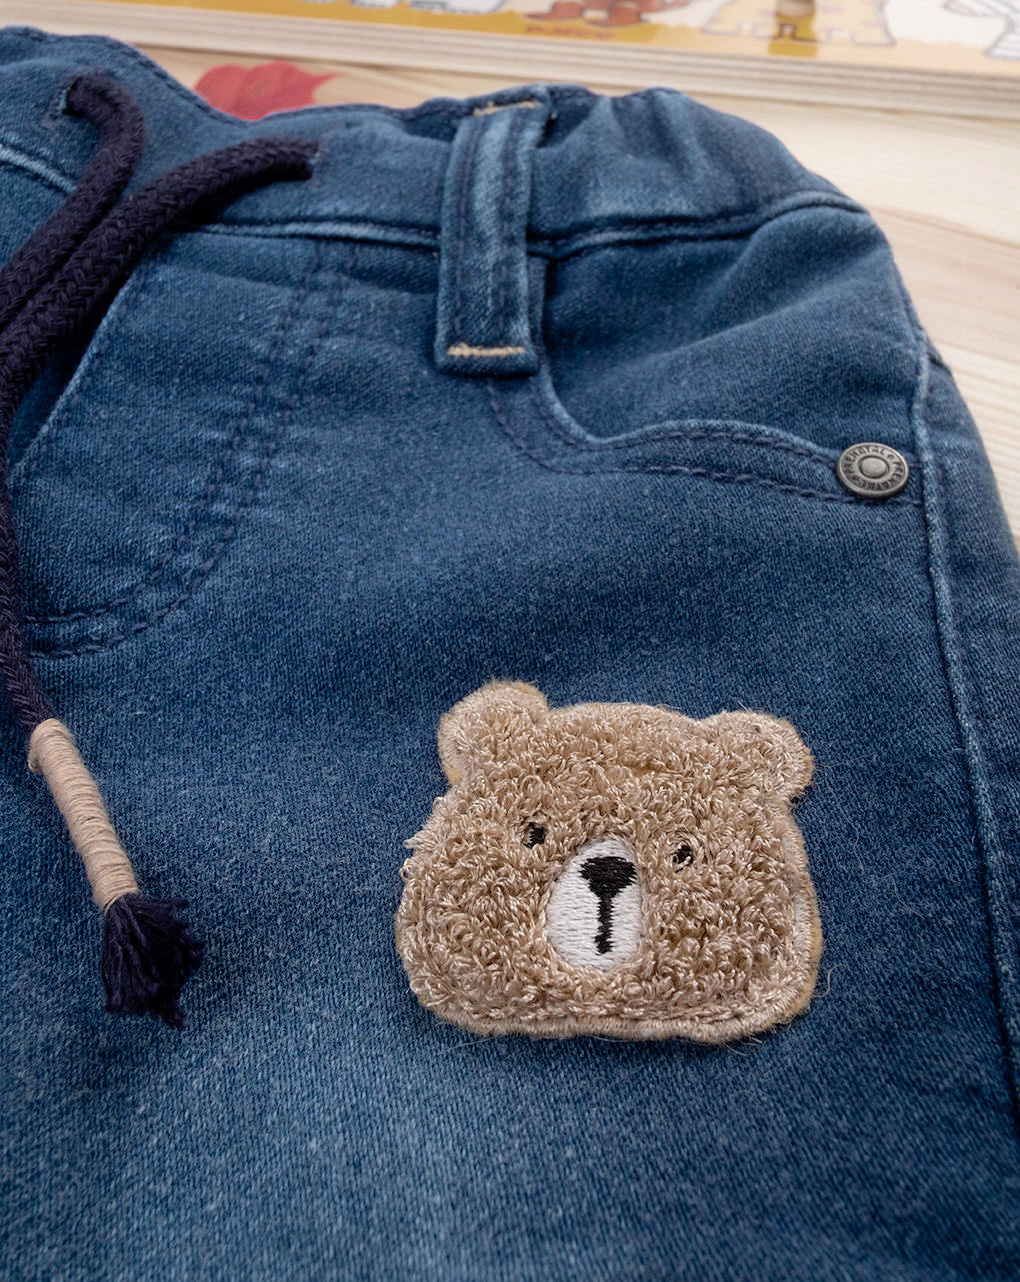 βρεφικό τζιν παντελόνι με αρκουδάκι για αγόρι - Prénatal